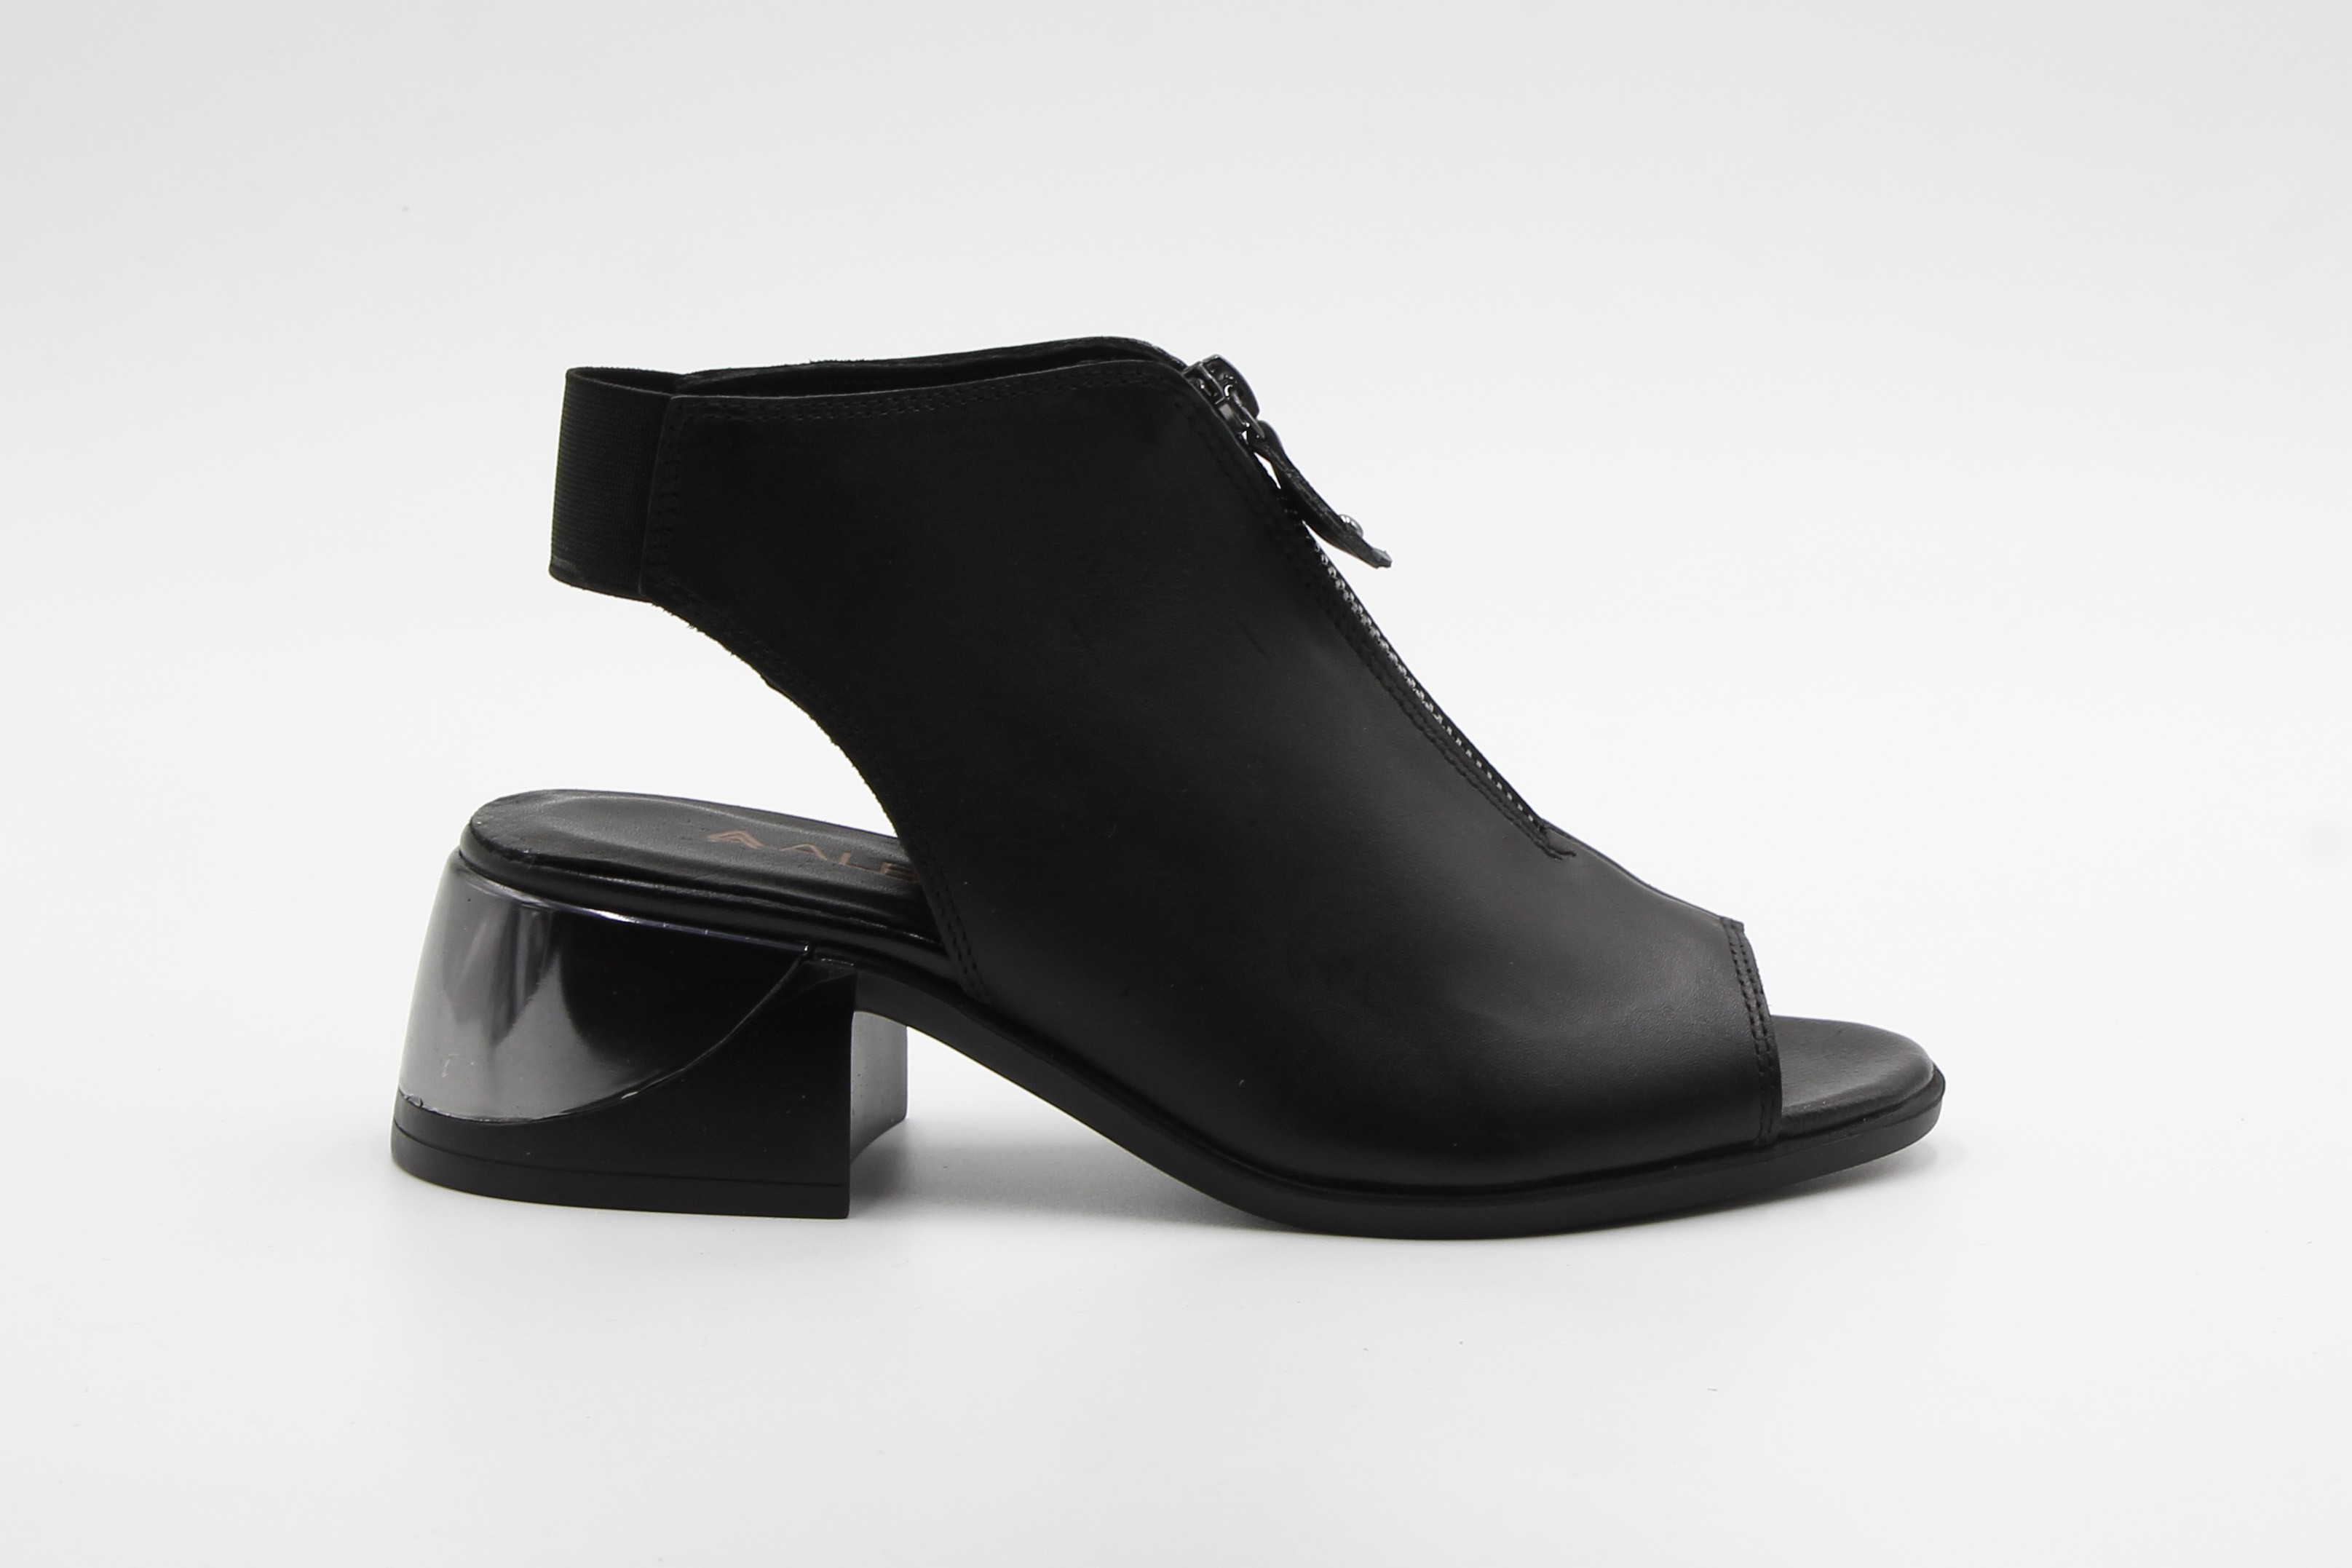 Albini Kadın Deri Dolgu Topuk Sandalet - Siyah